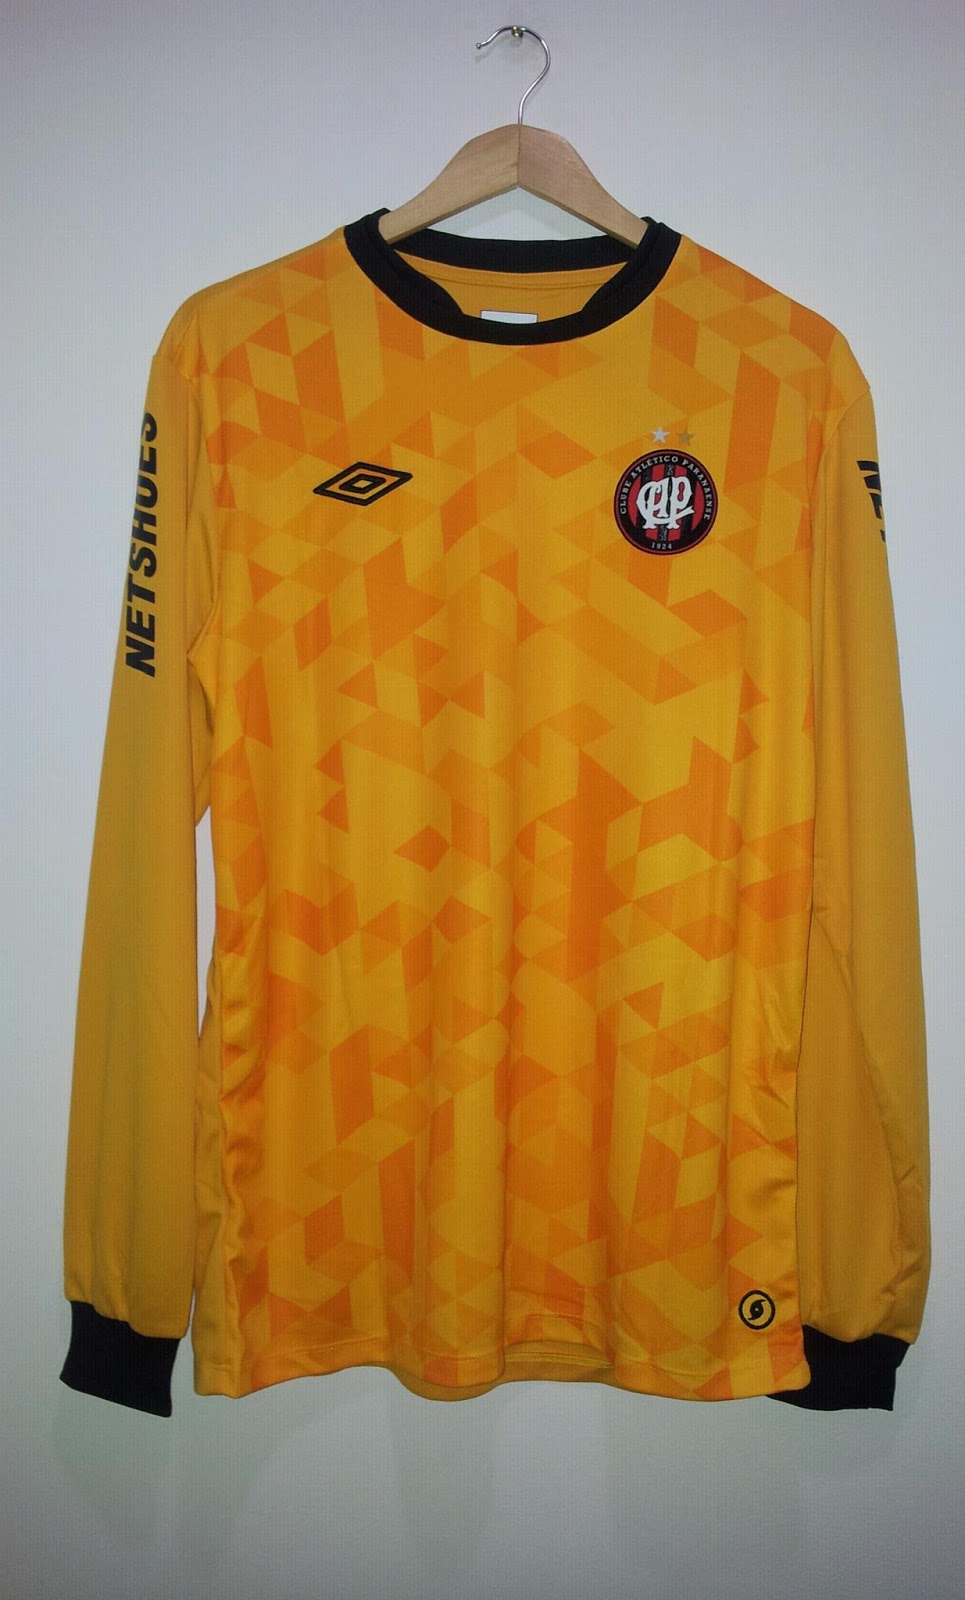 Coleção Atlético Paranaense: Camisa goleiro - 2012